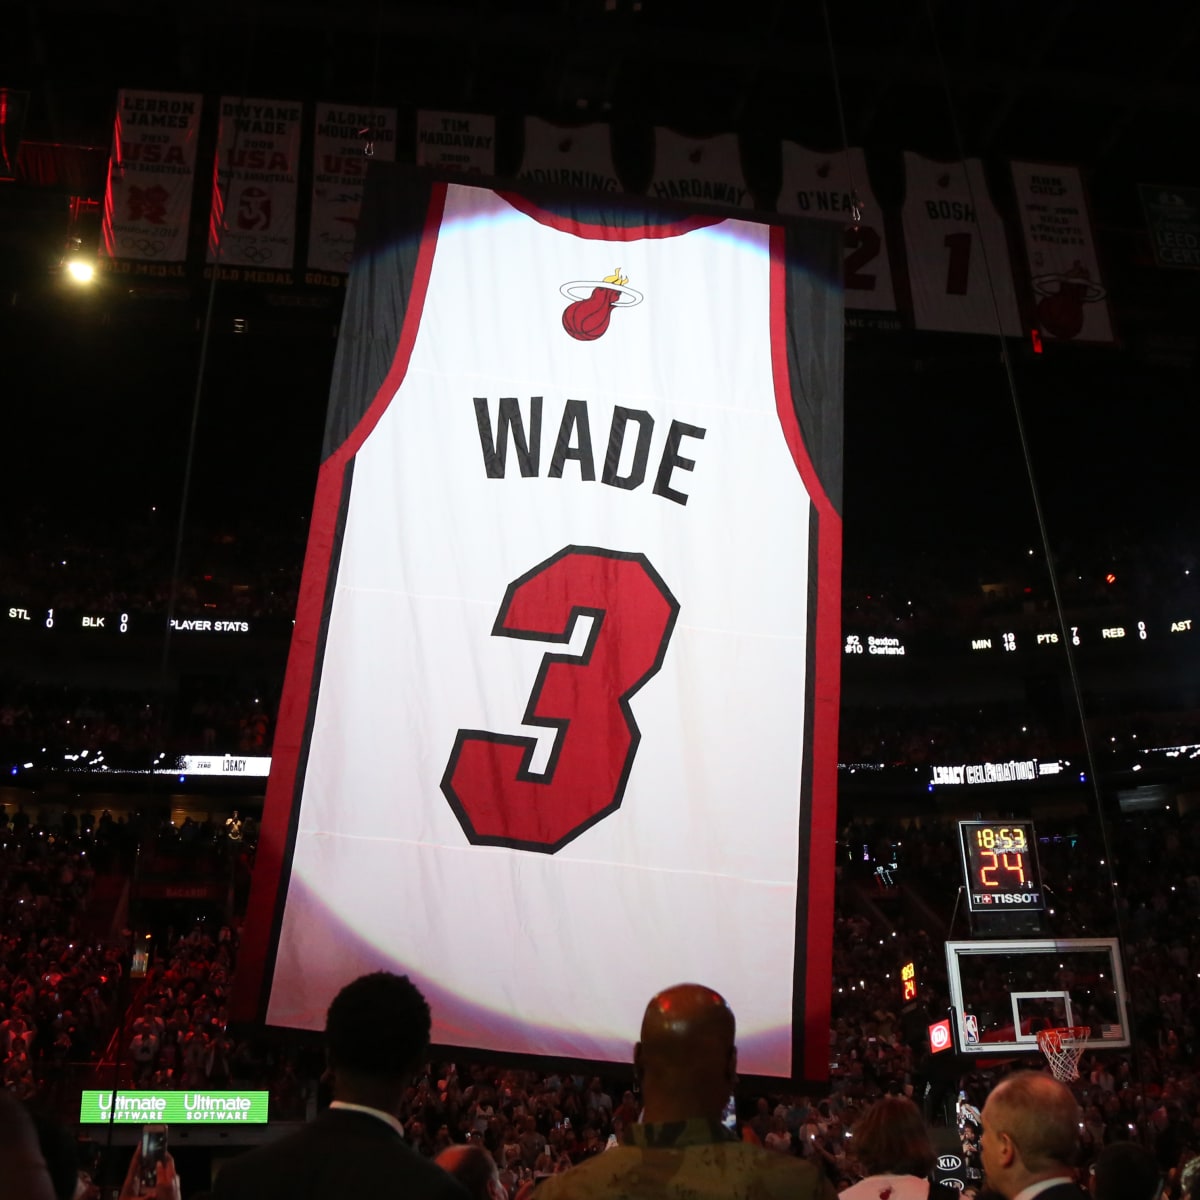 Miami Heat owe Dwyane Wade way more than jersey-retiring - CGTN